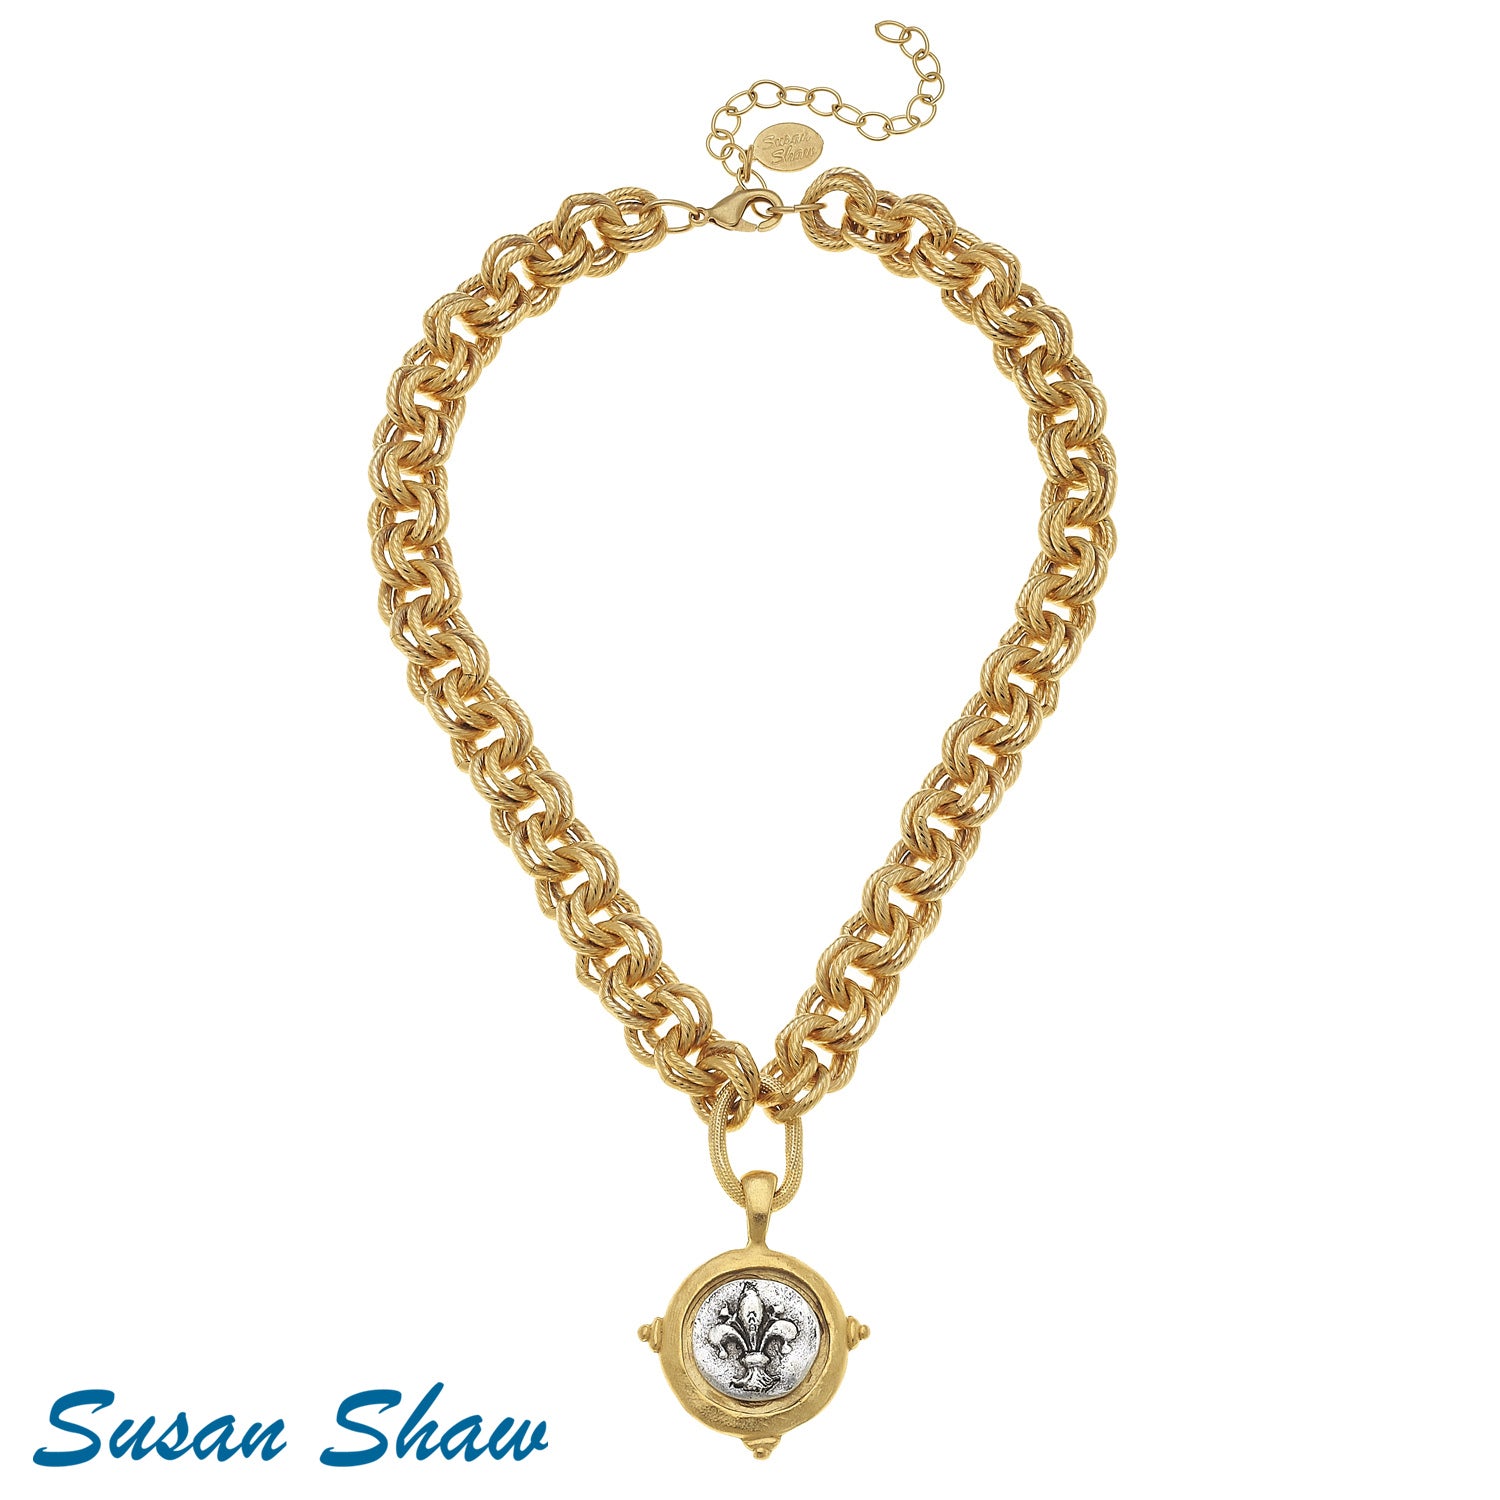 Susan Shaw Handcast Gold & Silver Italian Intaglio "Fleur de Lis" Necklace